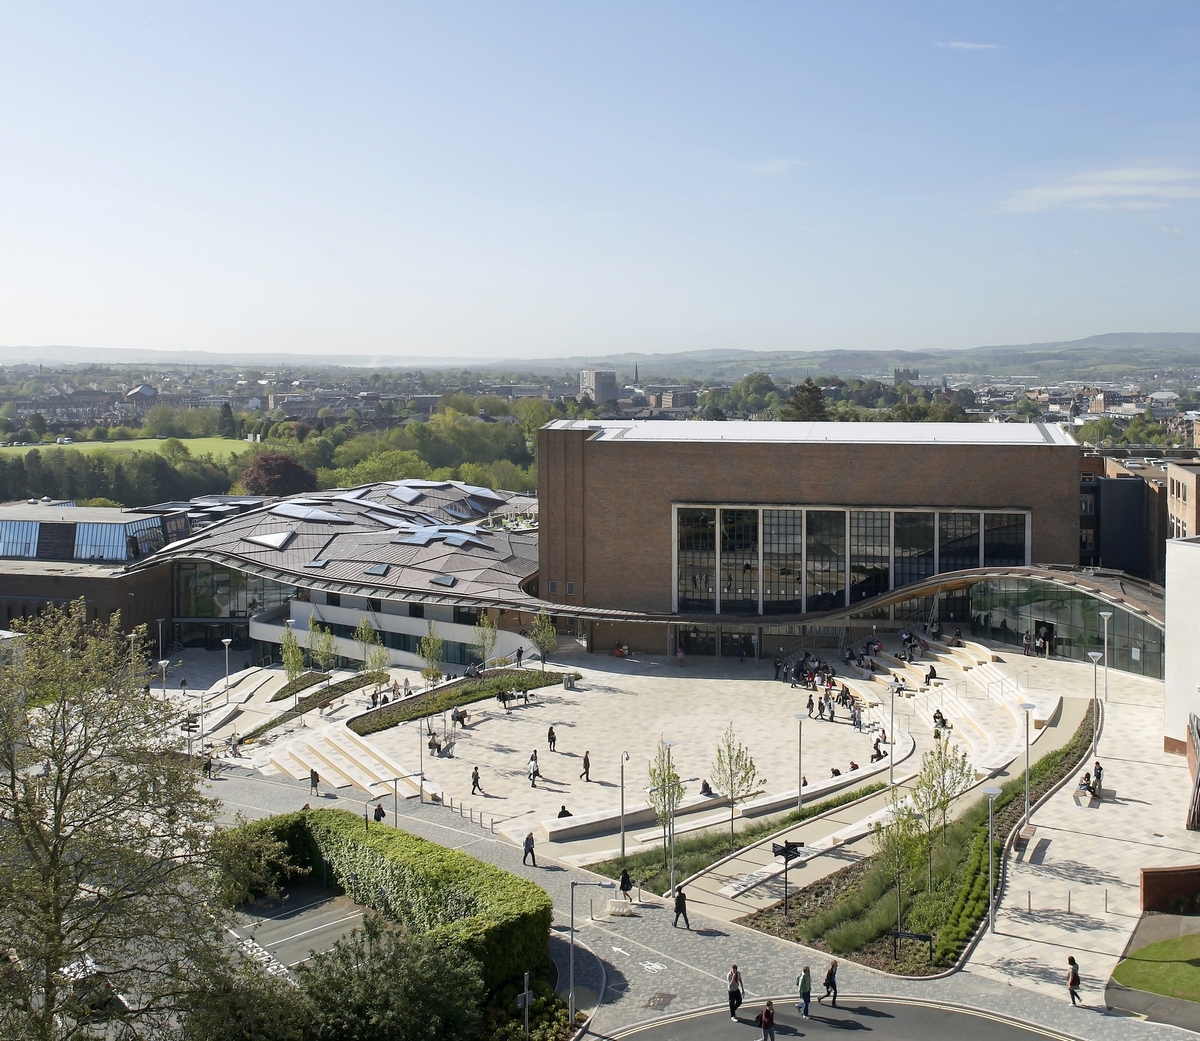 Первое место в категории «Высшее образование и исследования». Здание Forum Project университета города Эксетер в Великобритании. Проект был разработан лондонской компанией Wilkinson Eyre Architects.